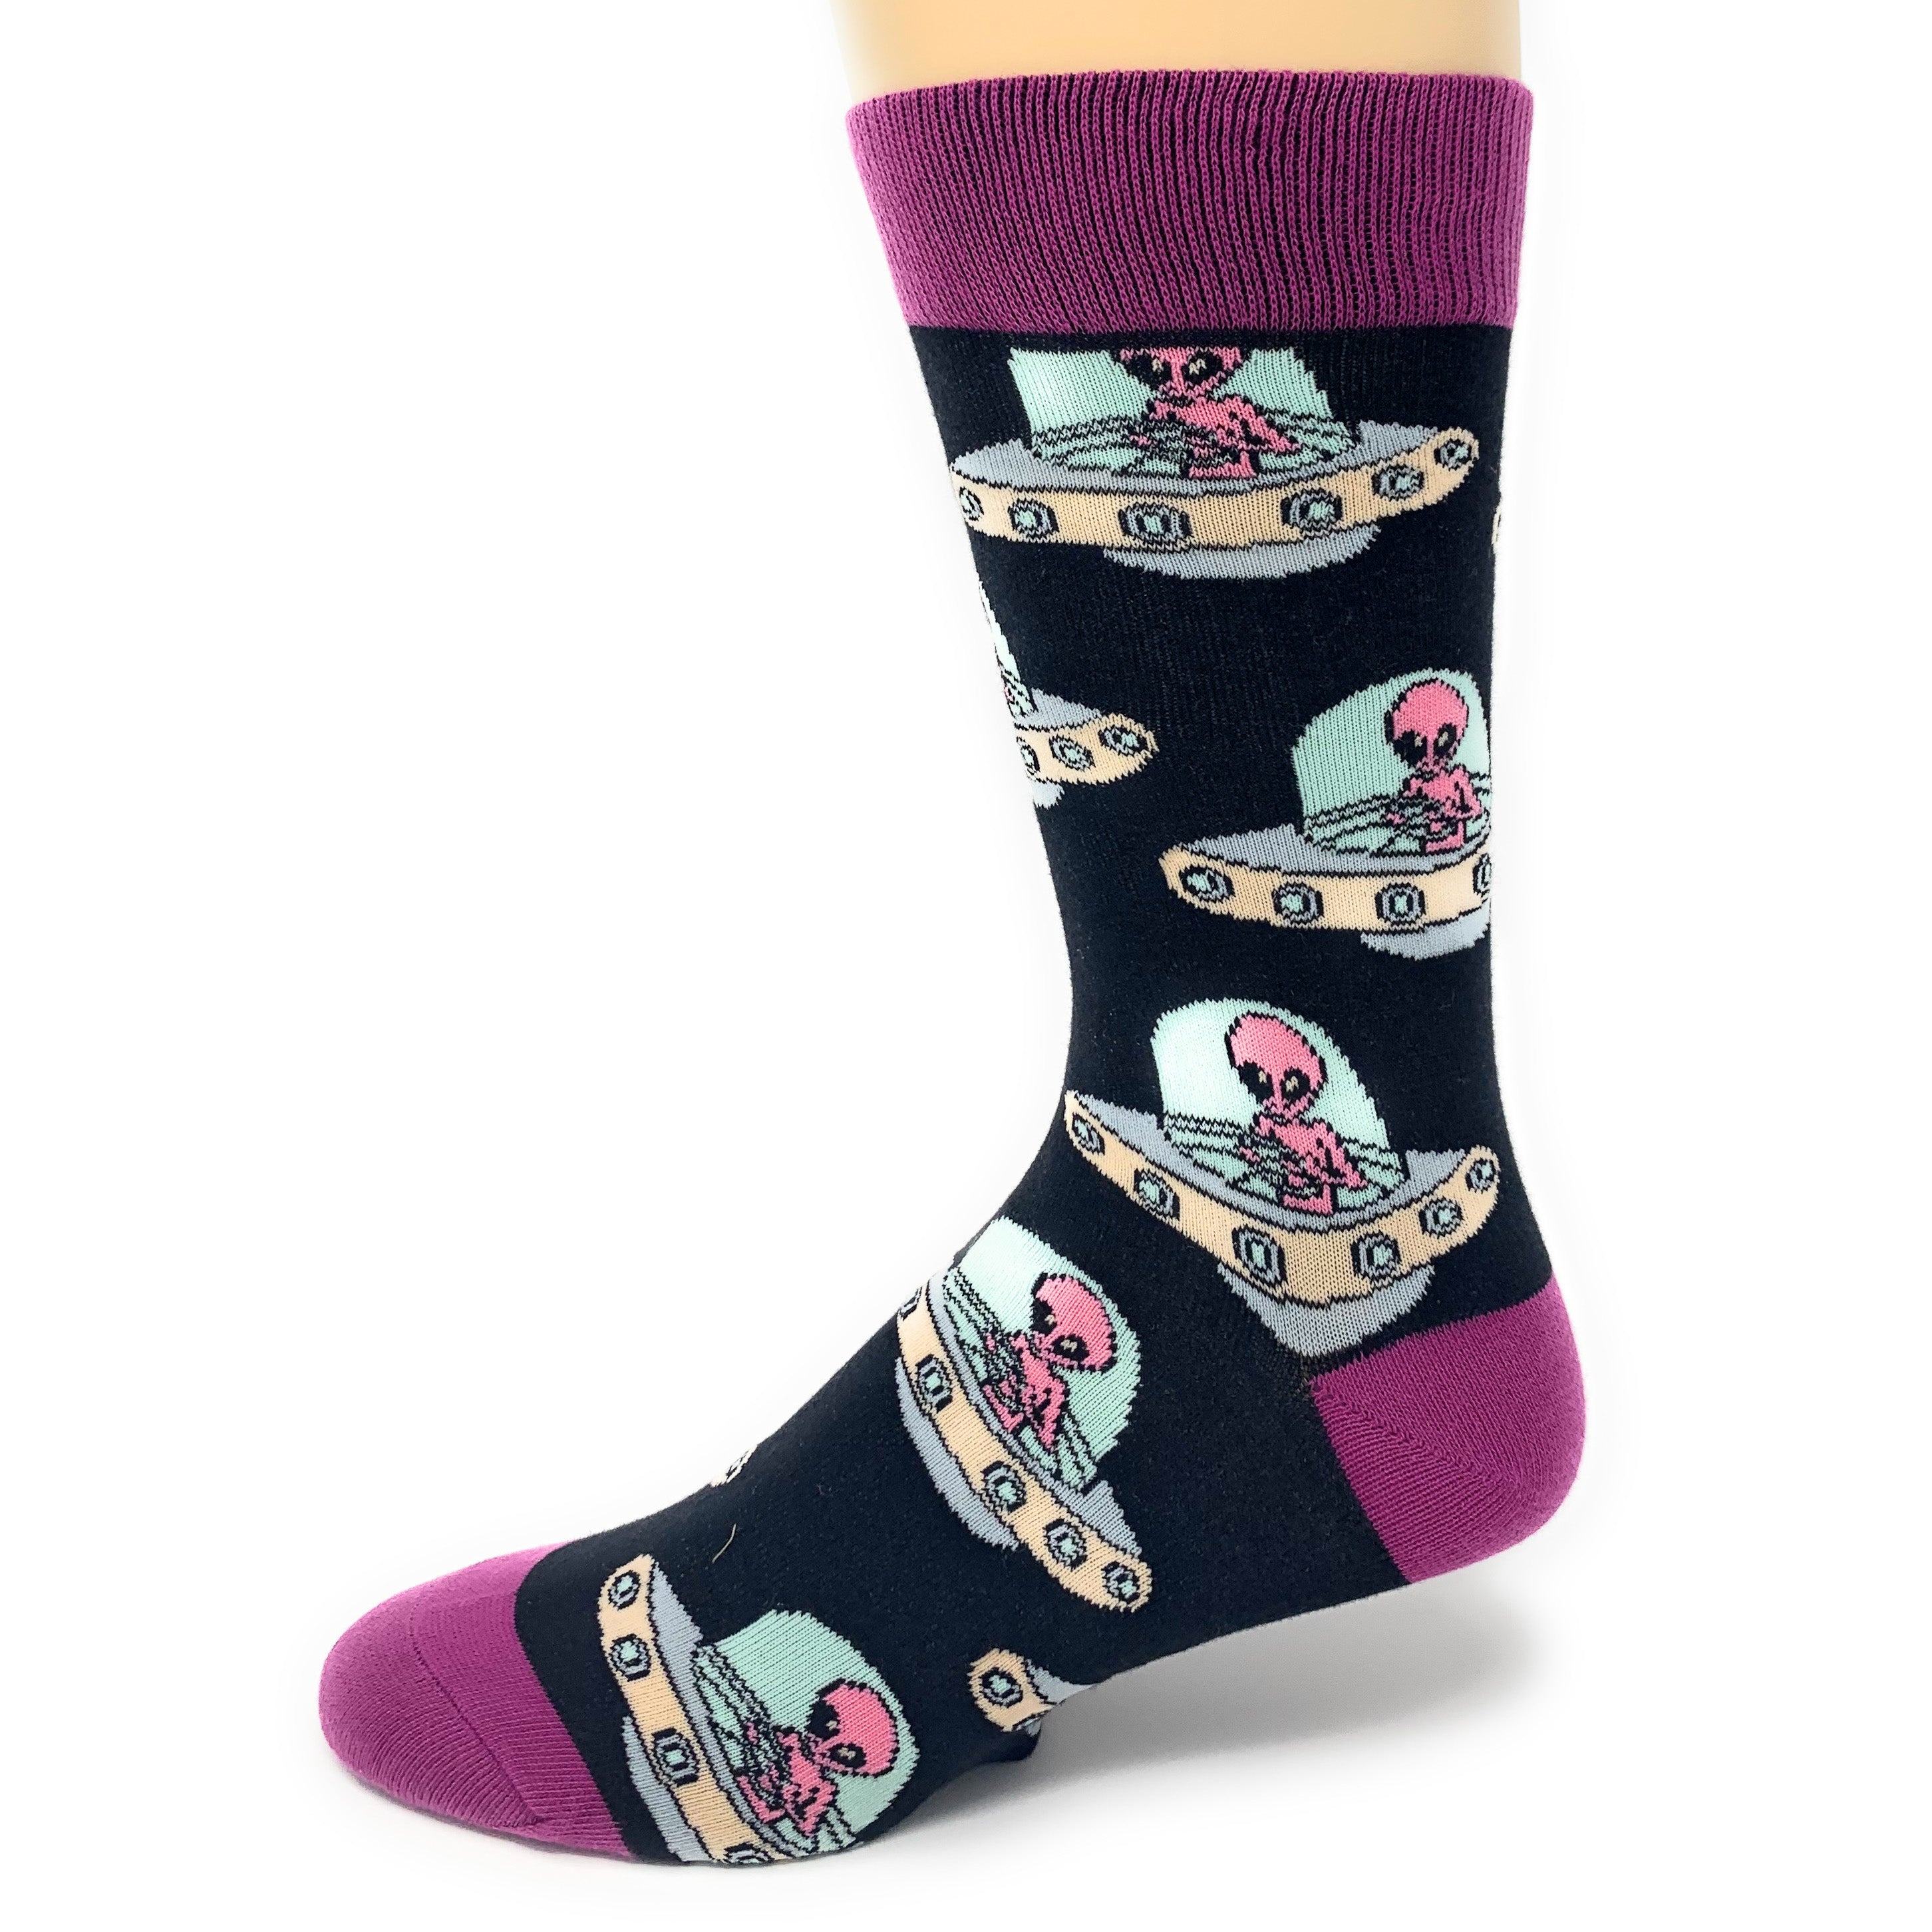 Always Spaced Socks | Novelty Crew Socks For Men